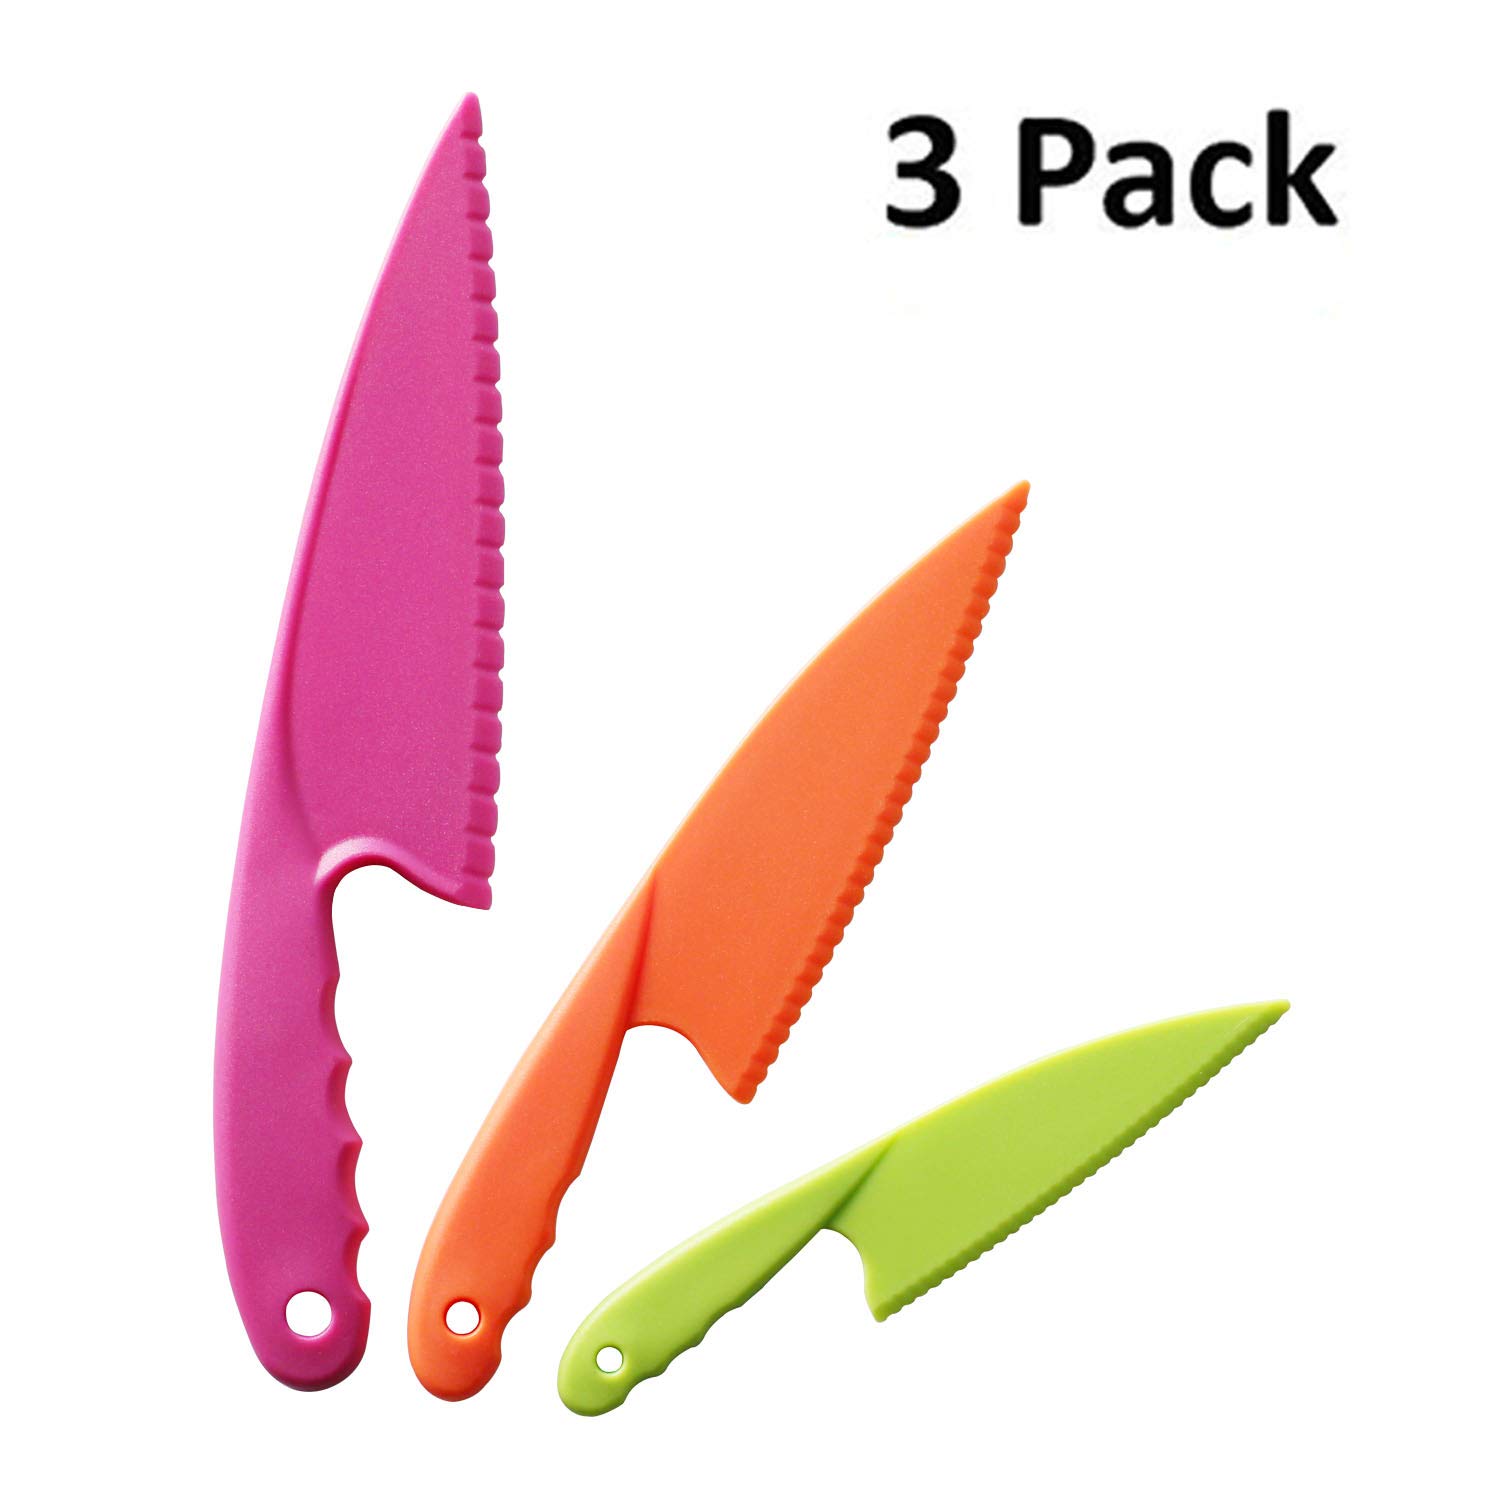 3 pack plastic knives